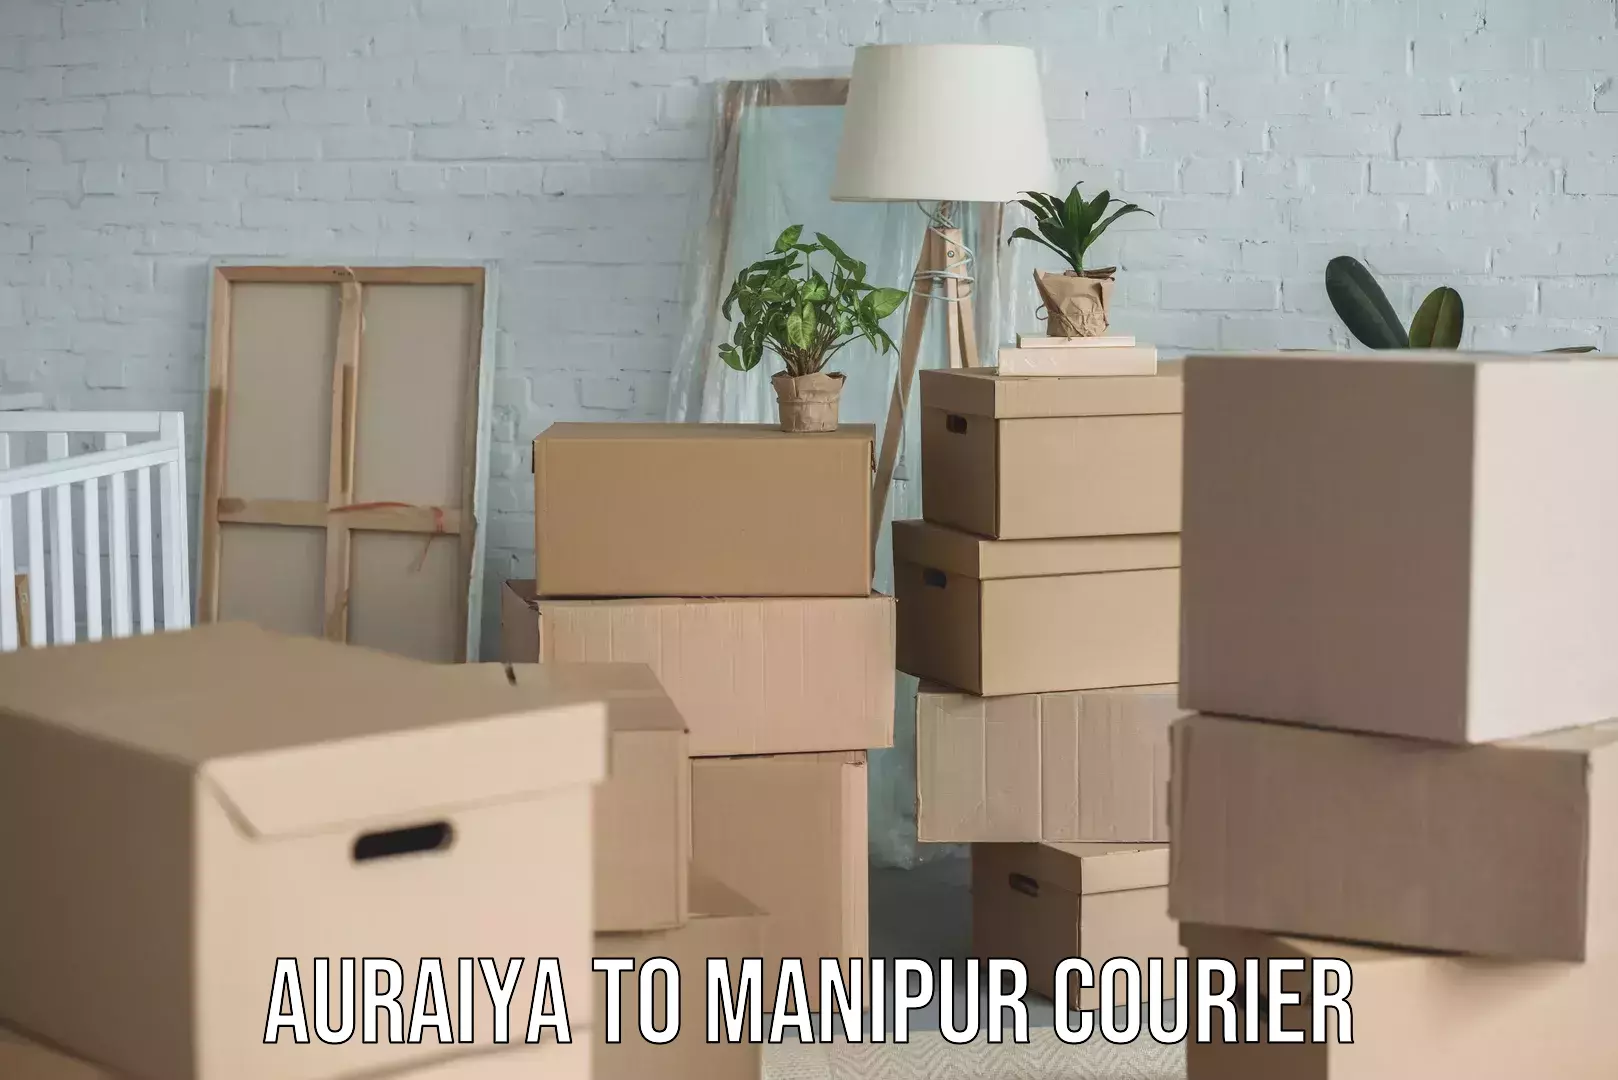 24/7 courier service Auraiya to Manipur